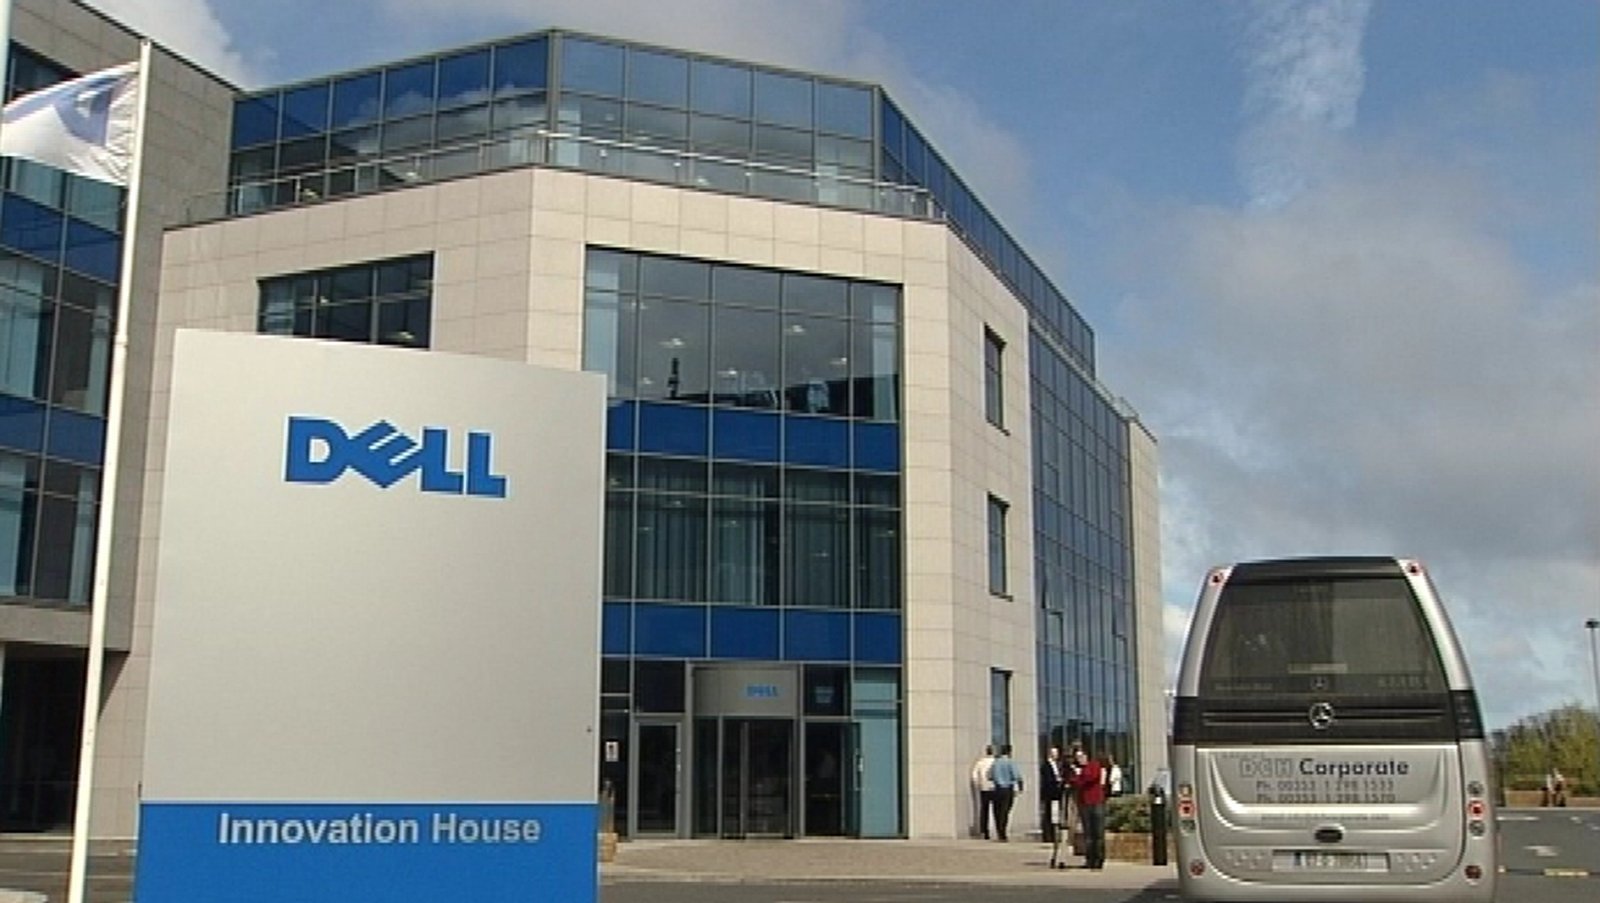 Dell announces 300 jobs for Dublin